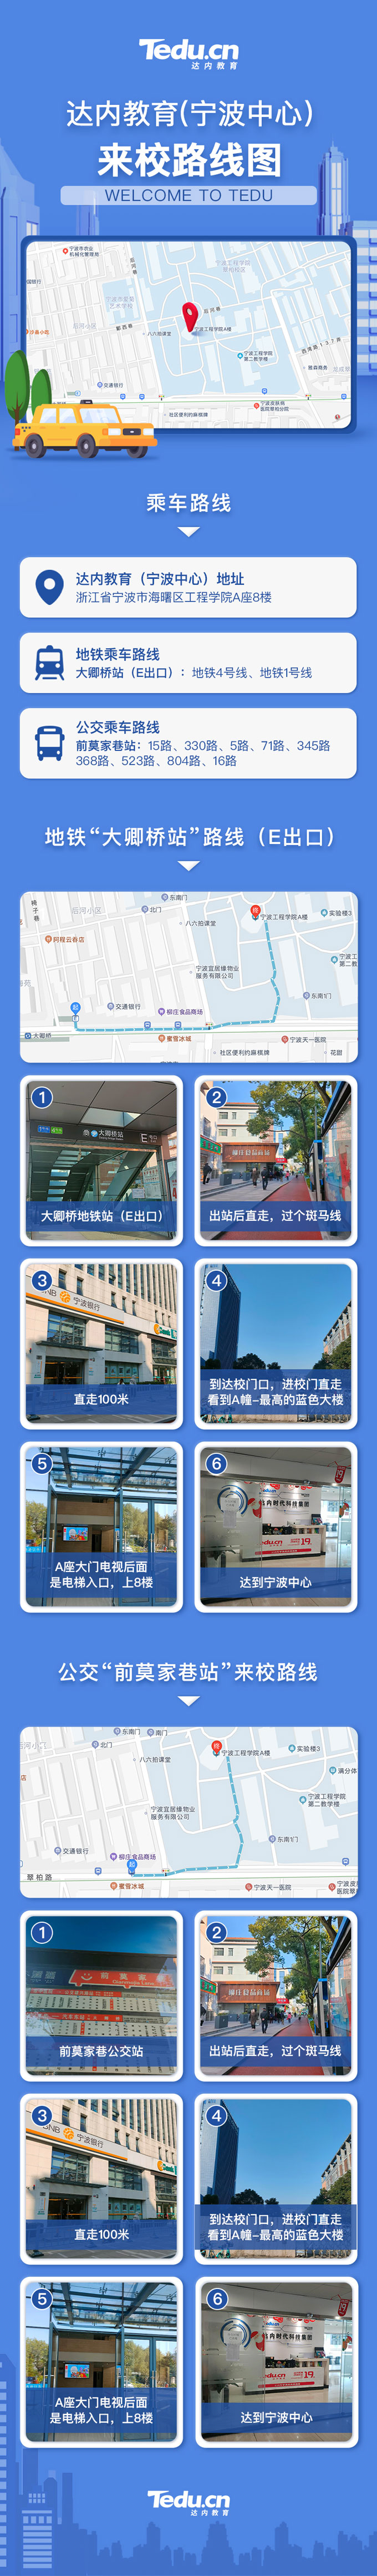 寧波<a style='color:blue' href='//swbp.com.cn/'>達內</a>教育IT培訓中心